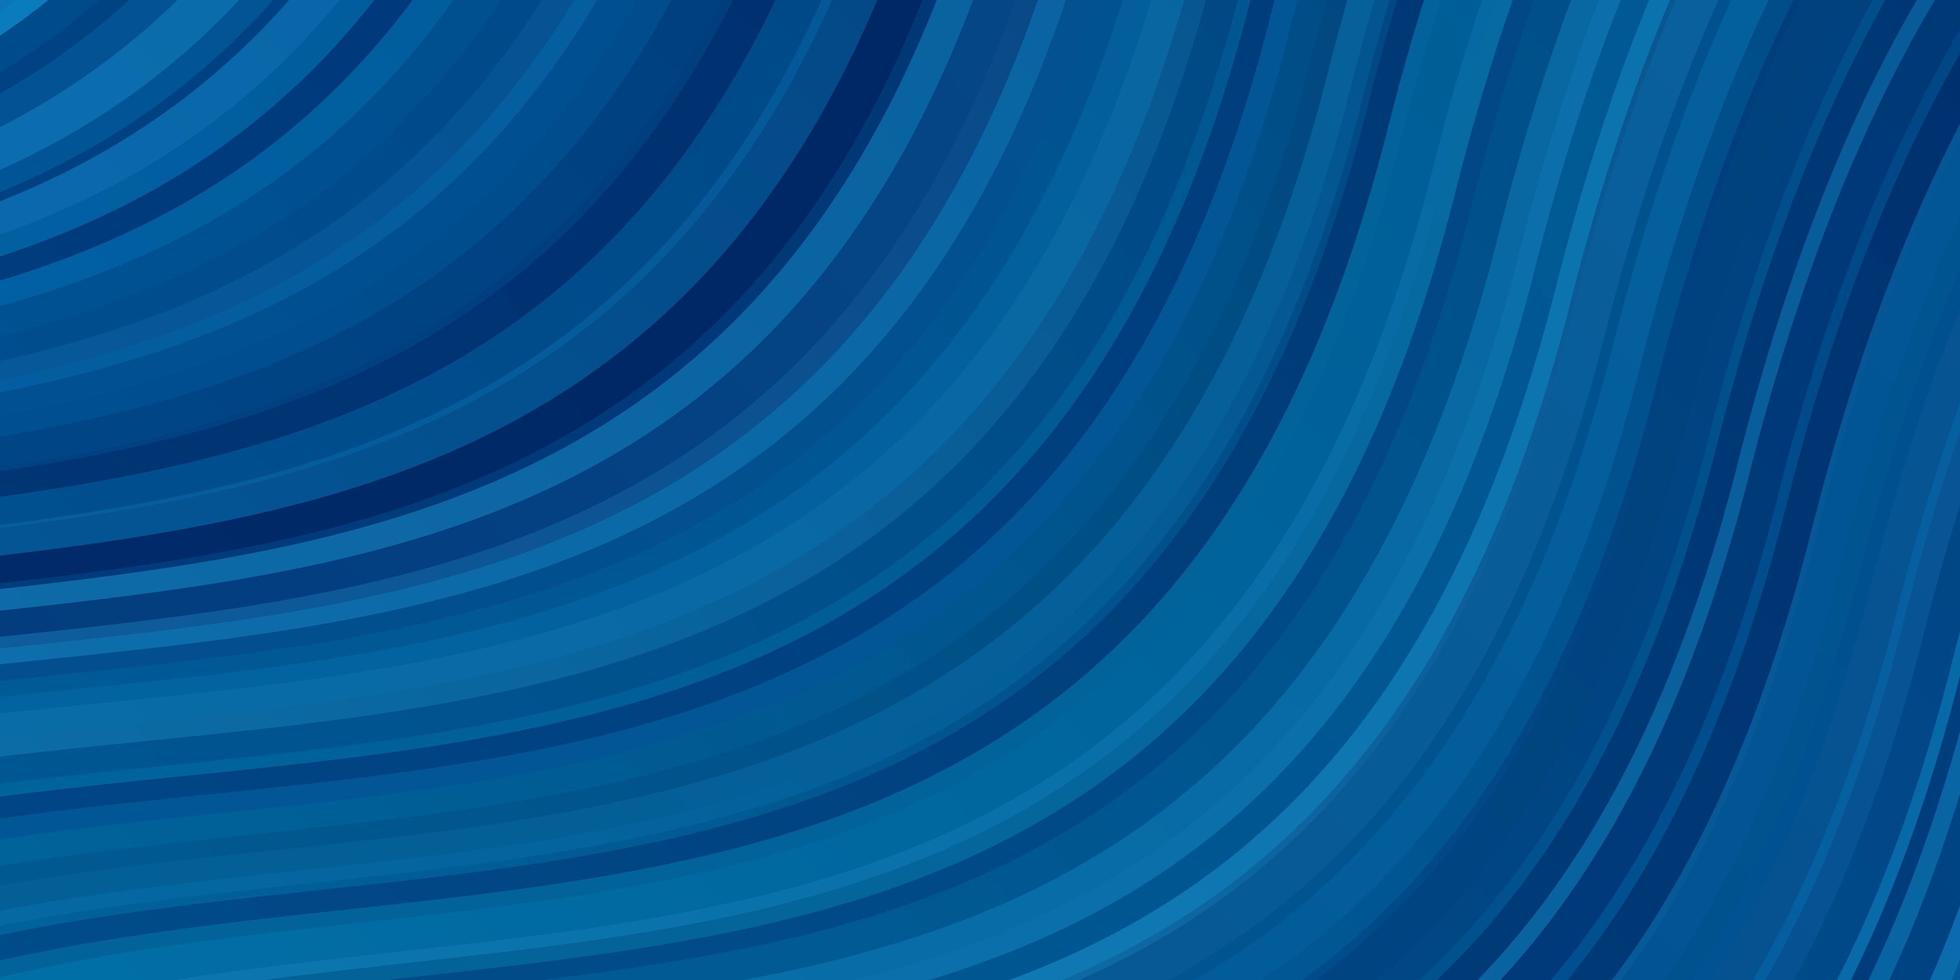 ljusblå vektorbakgrund med böjda linjer. färgglad illustration i cirkulär stil med linjer. smart design för dina kampanjer. vektor